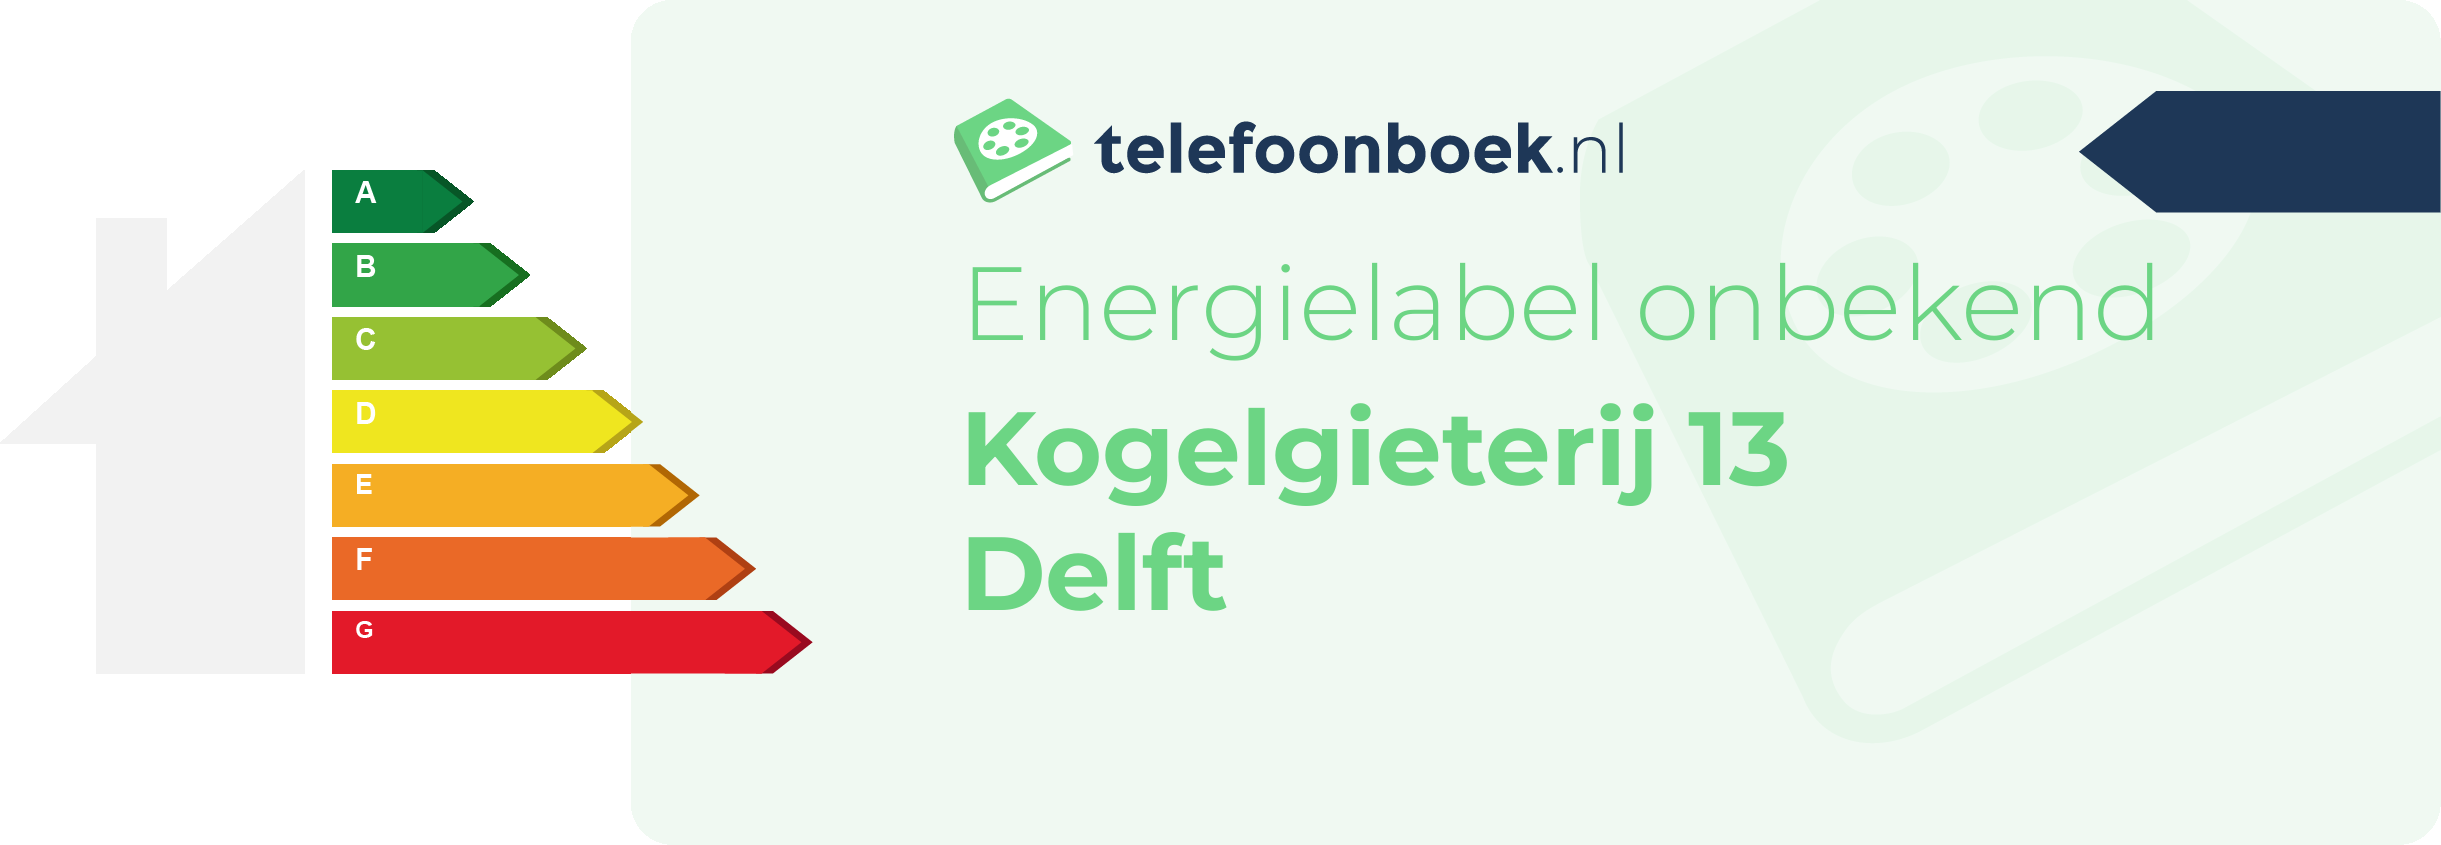 Energielabel Kogelgieterij 13 Delft